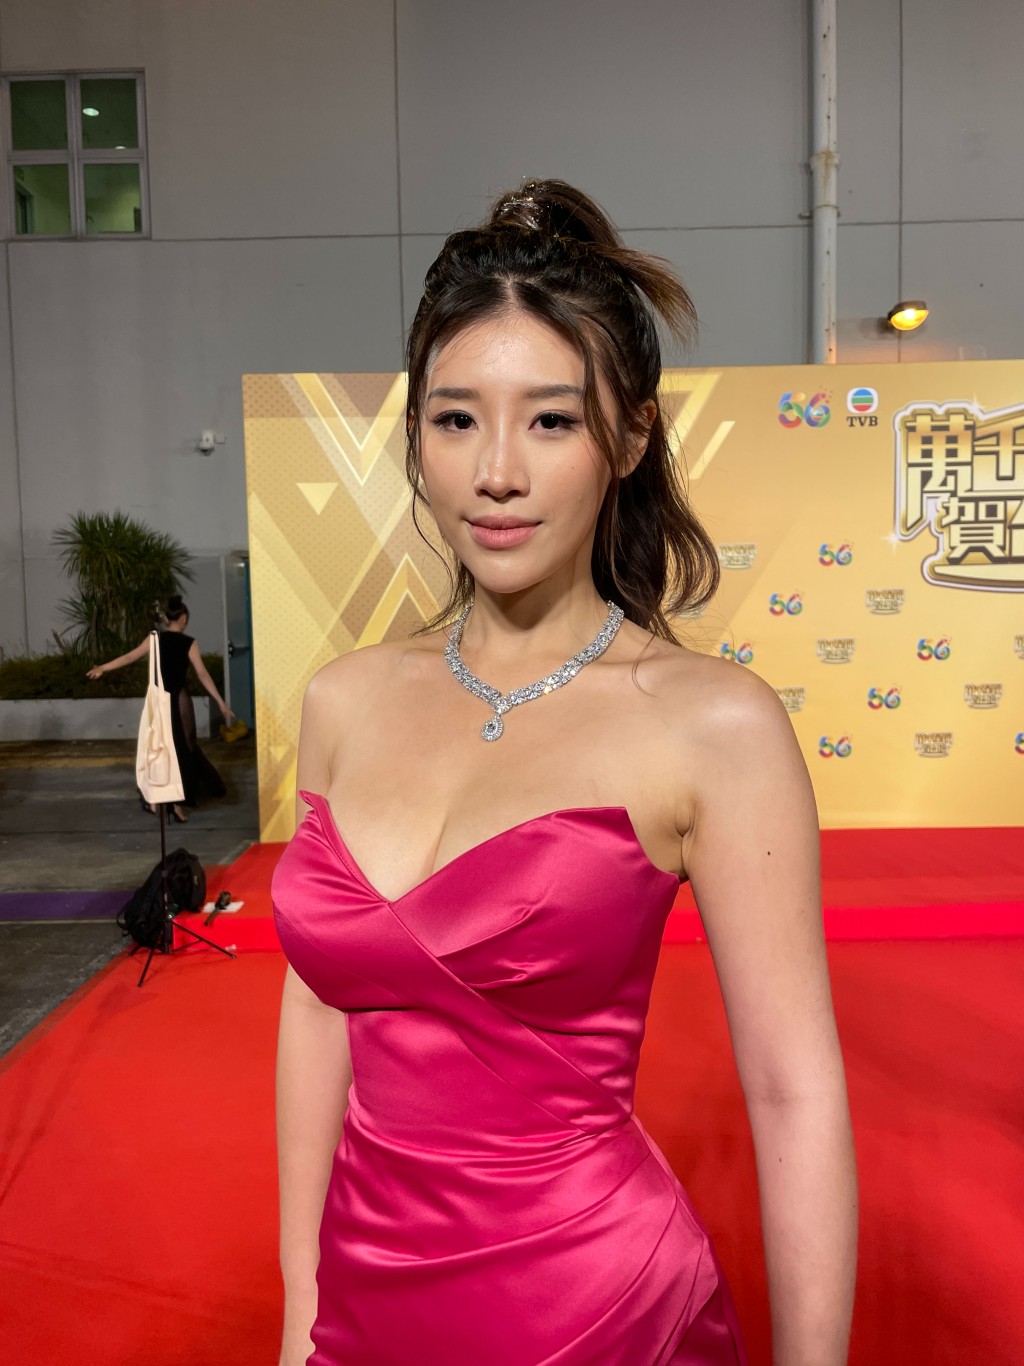 郭佩文曾在TVB台庆当日穿超低胸晚装引起话题。